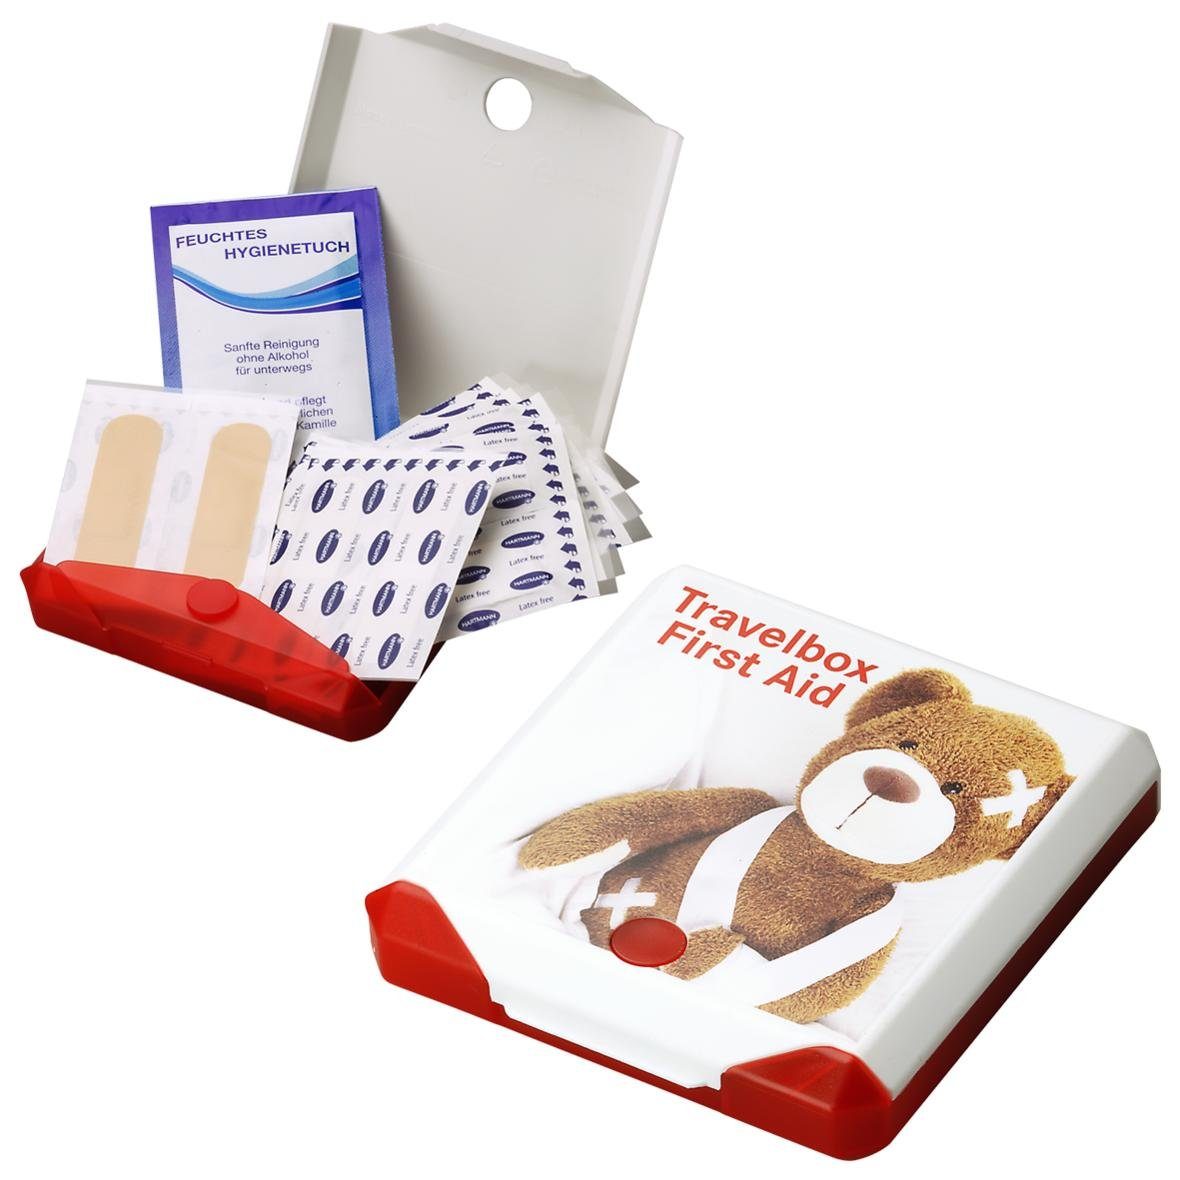 elasto Aufbewahrungsbox Travelbox "First Aid", Kompakte, wasserfeste Erste-Hilfe-Box - immer griffbereit!